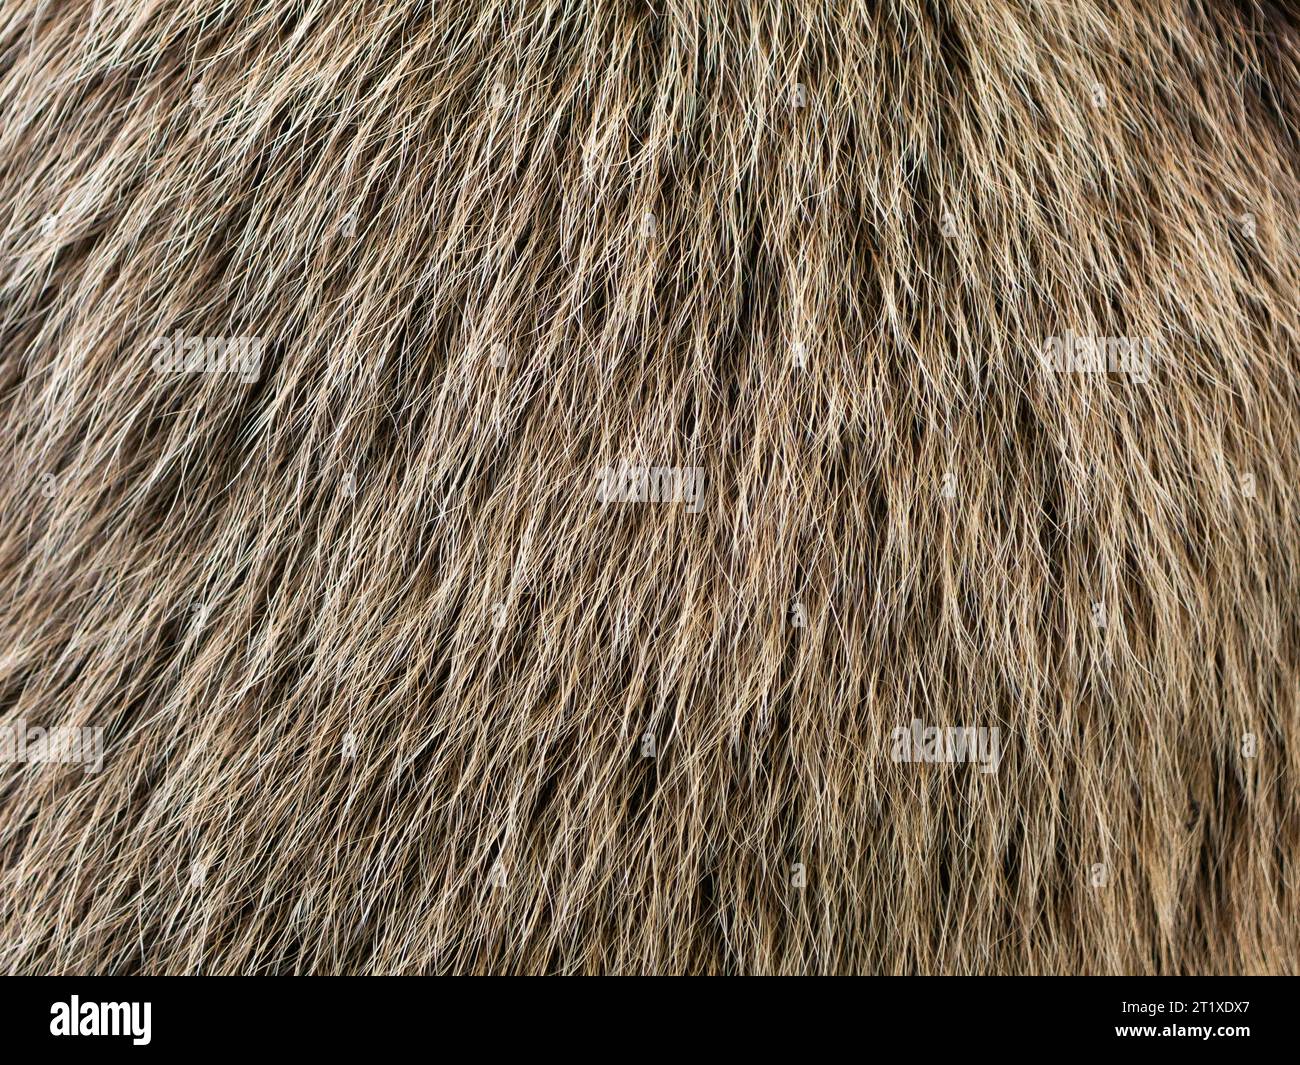 Trama di pelliccia di orso in primo piano. I capelli di un animale Ursus arctos sono soffici e morbidi. La struttura può essere utilizzata come sfondo astratto. Foto Stock